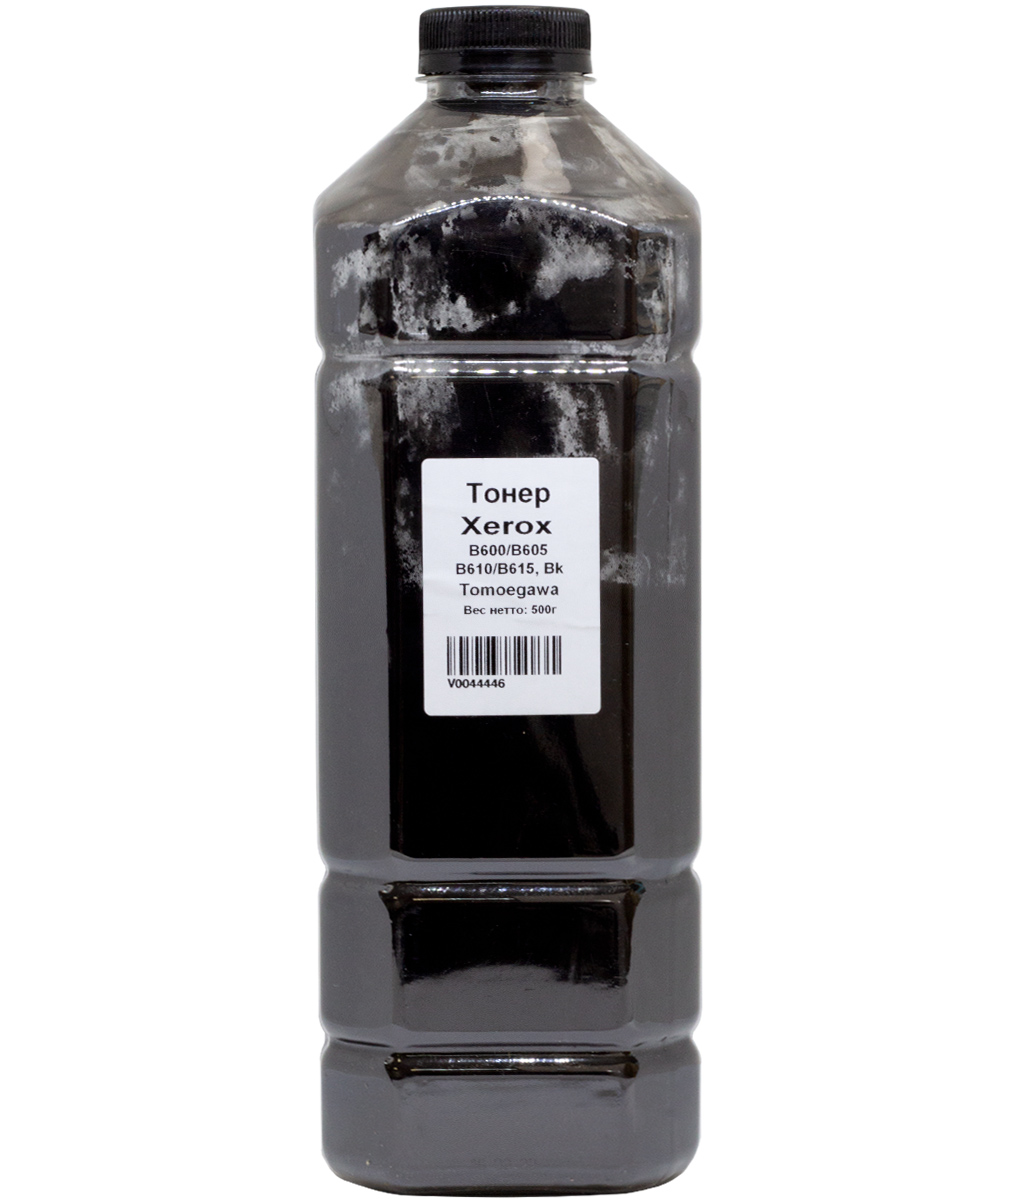 Тонер Tomoegawa, бутыль 500 г, черный, совместимый для Xerox VersaLink B600/605/610/615 (V0044446)